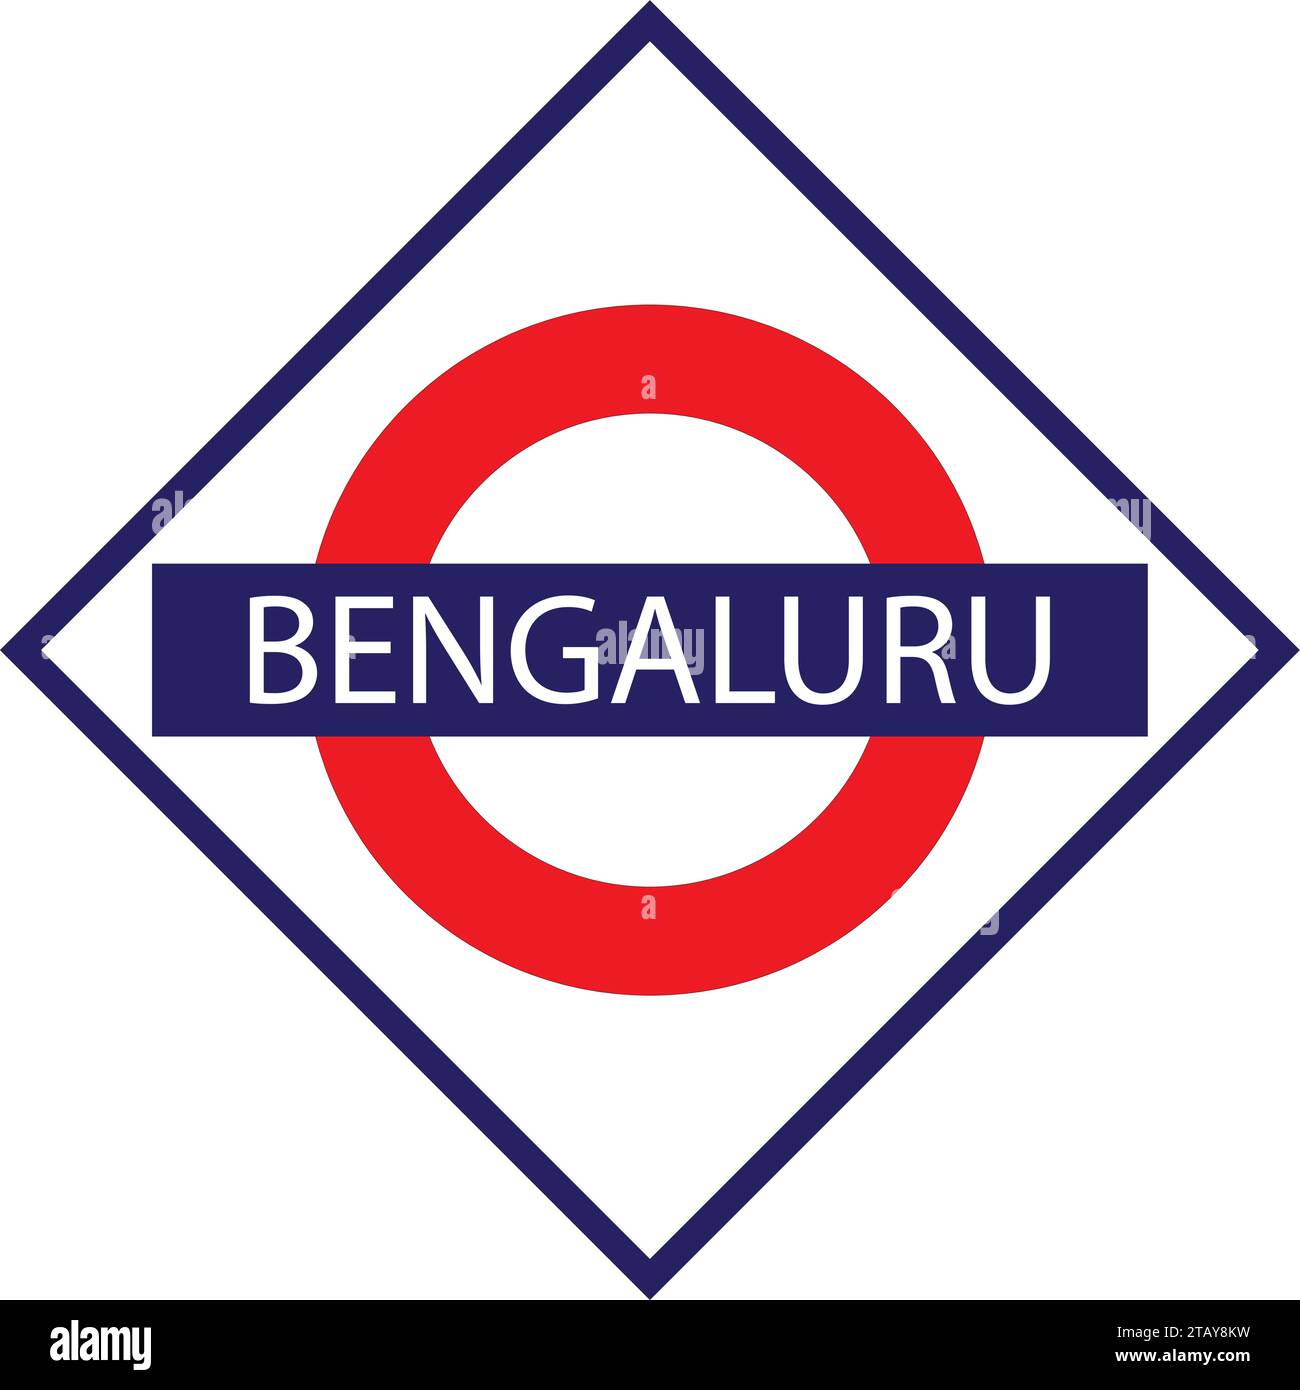 Bengaluru Junction Railways Namensschild isoliert auf weiß Stock Vektor